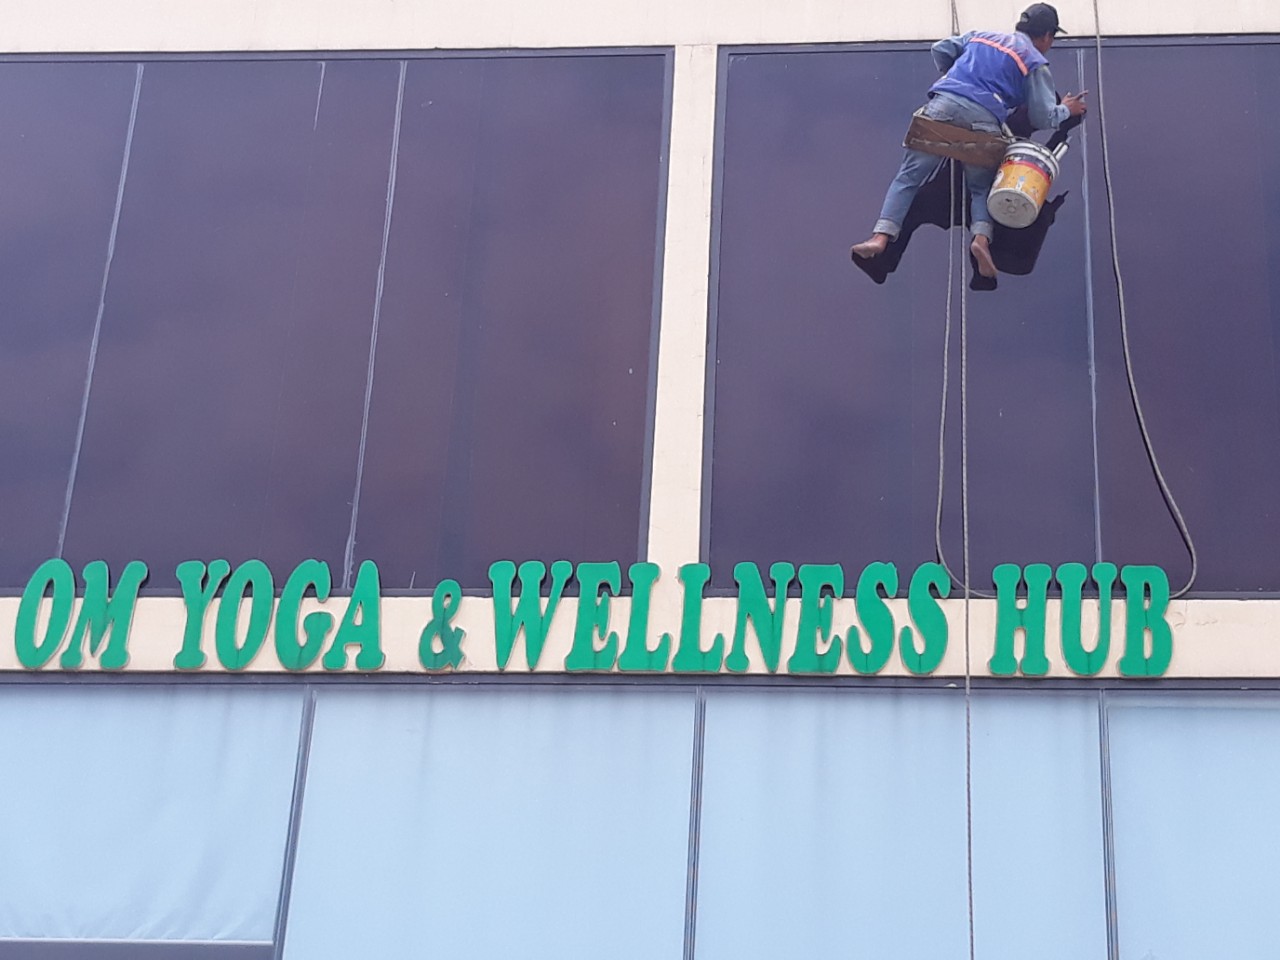 Thi công chống thấm tại Om Yoga & Wellness Hub